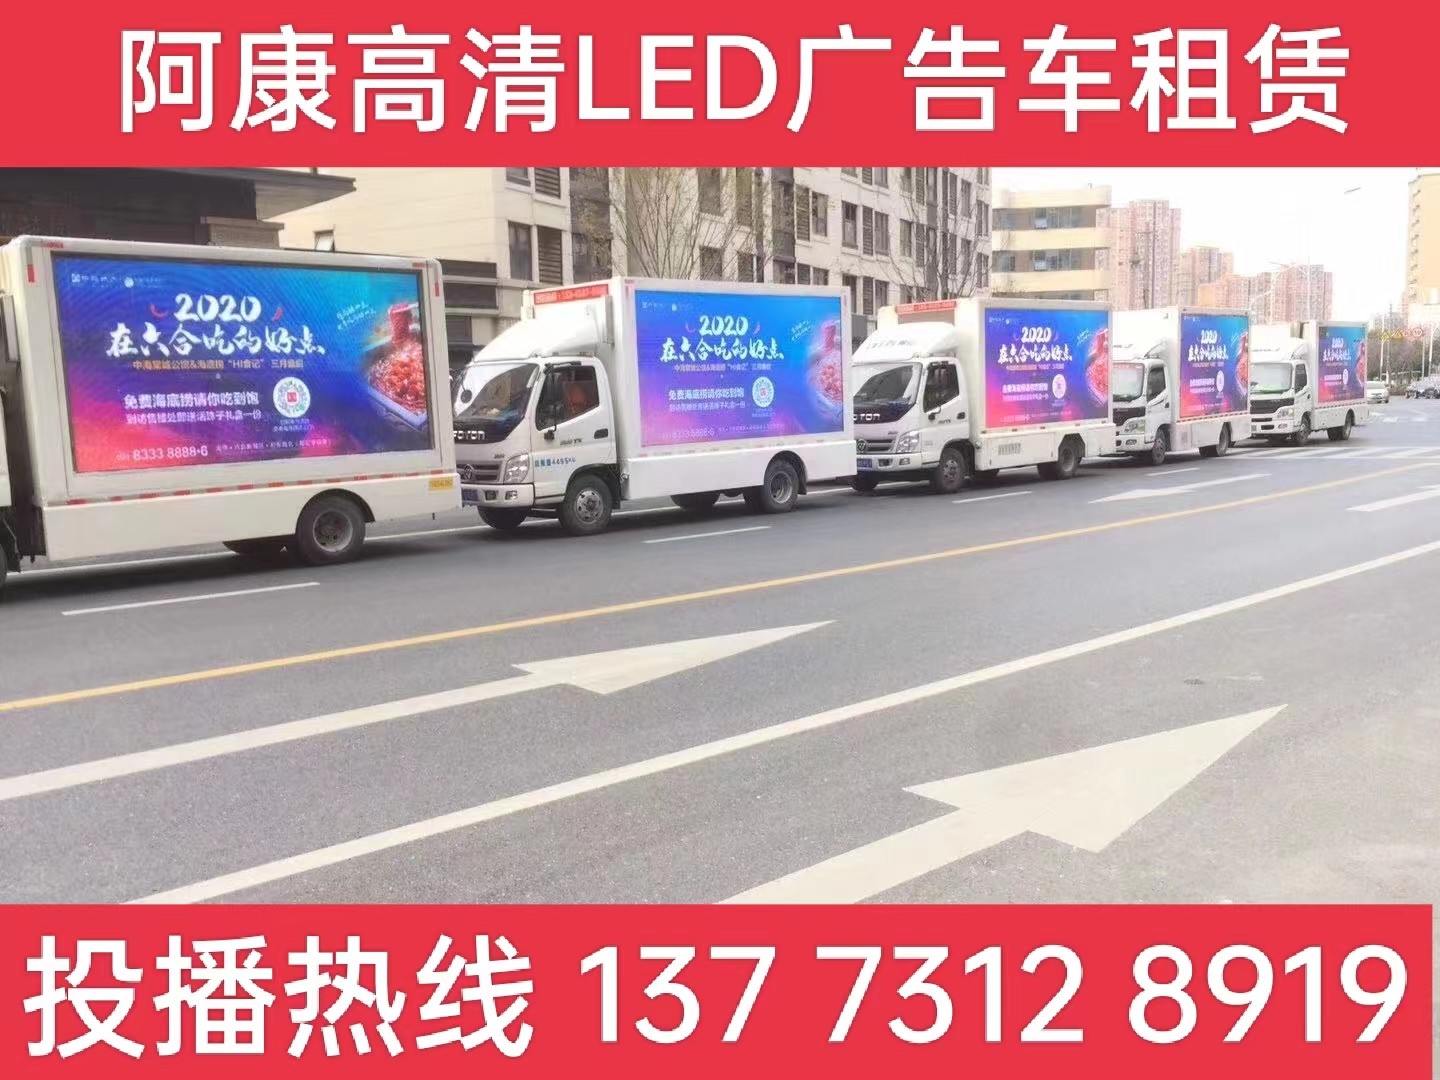 苏州宣传车出租-海底捞LED广告